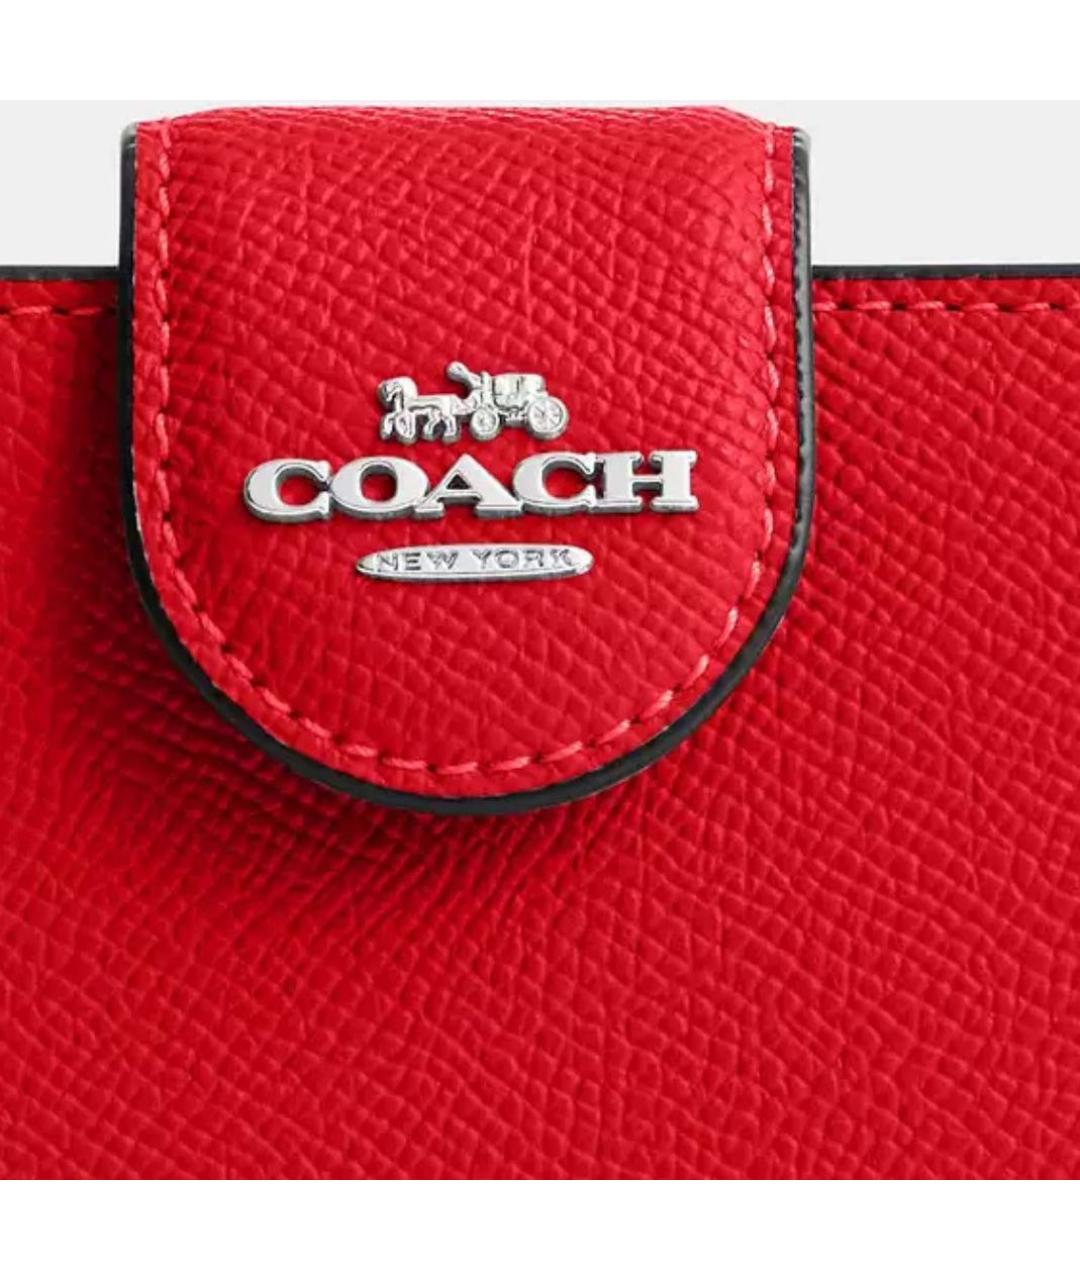 COACH Красный кожаный кошелек, фото 2